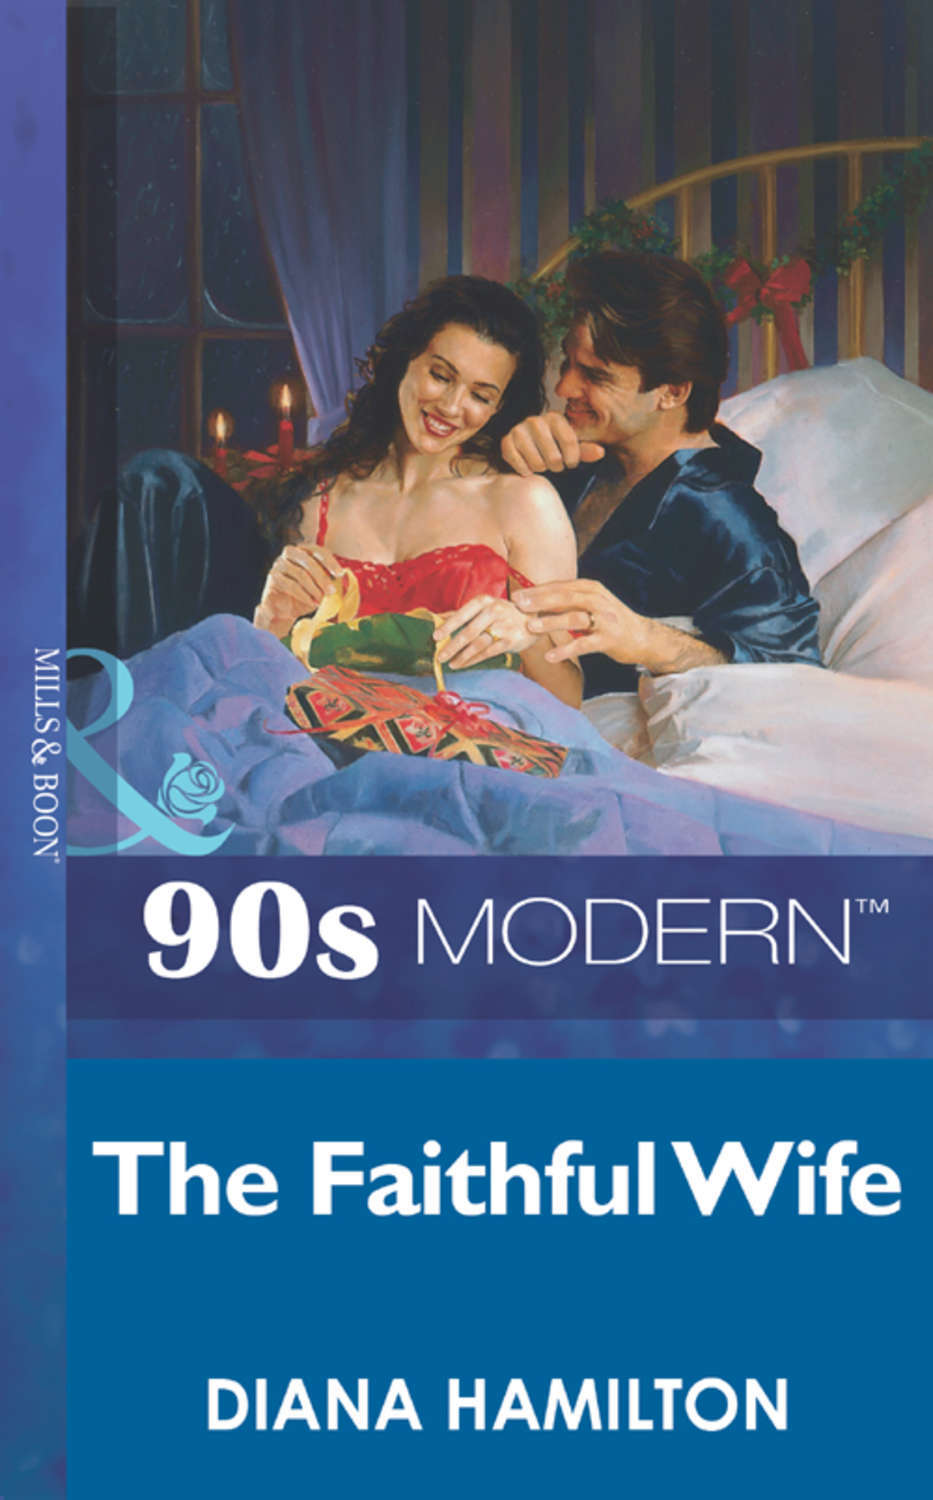 The wife book. Faithful wife. The Faithful wives book. The Faithful wives book, by Ruthilde m. Kronber.